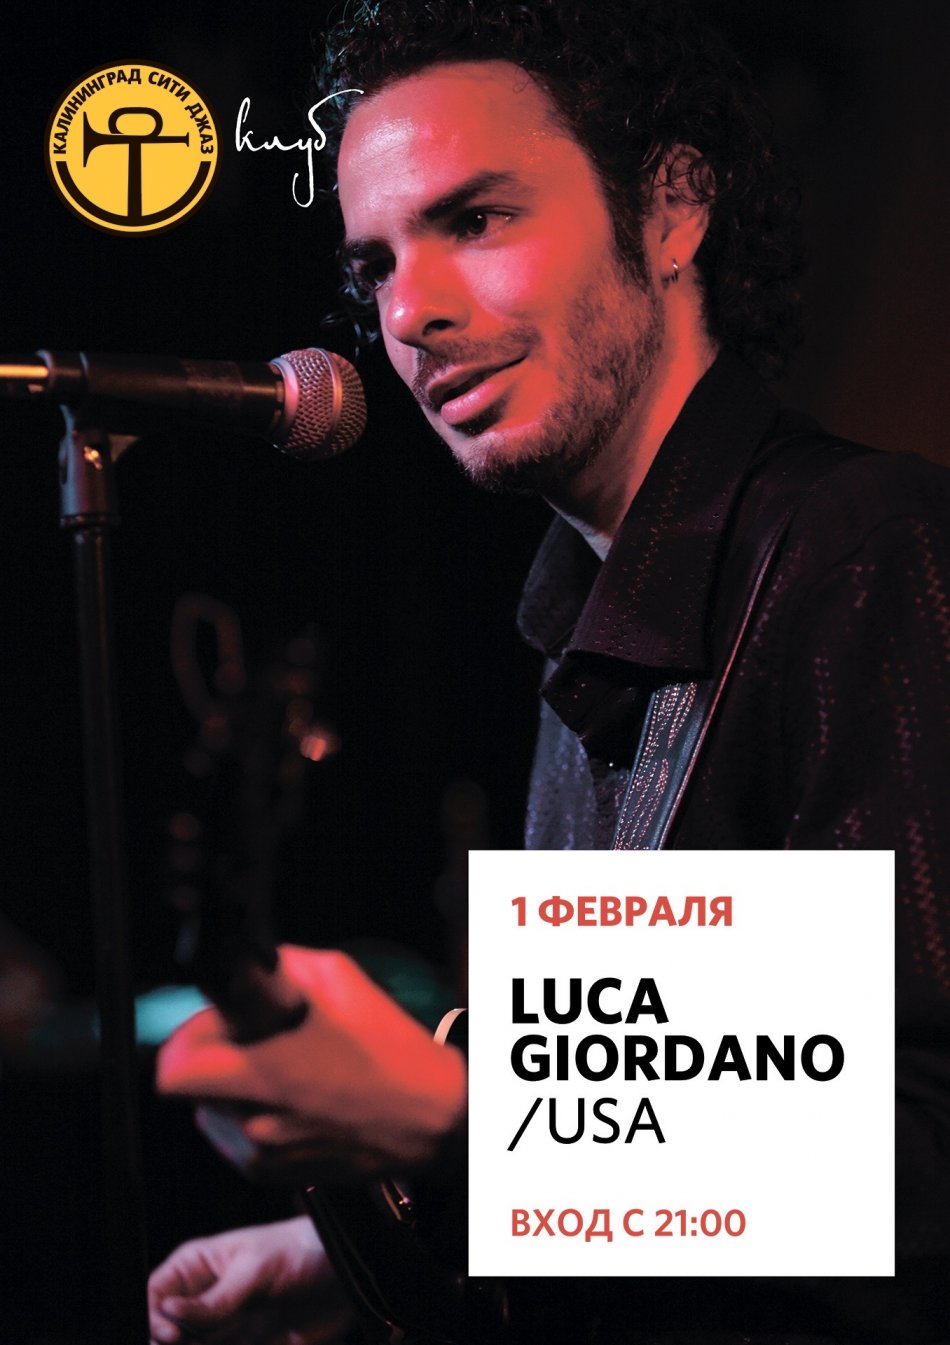 Luca Giordano (Italy/USA)